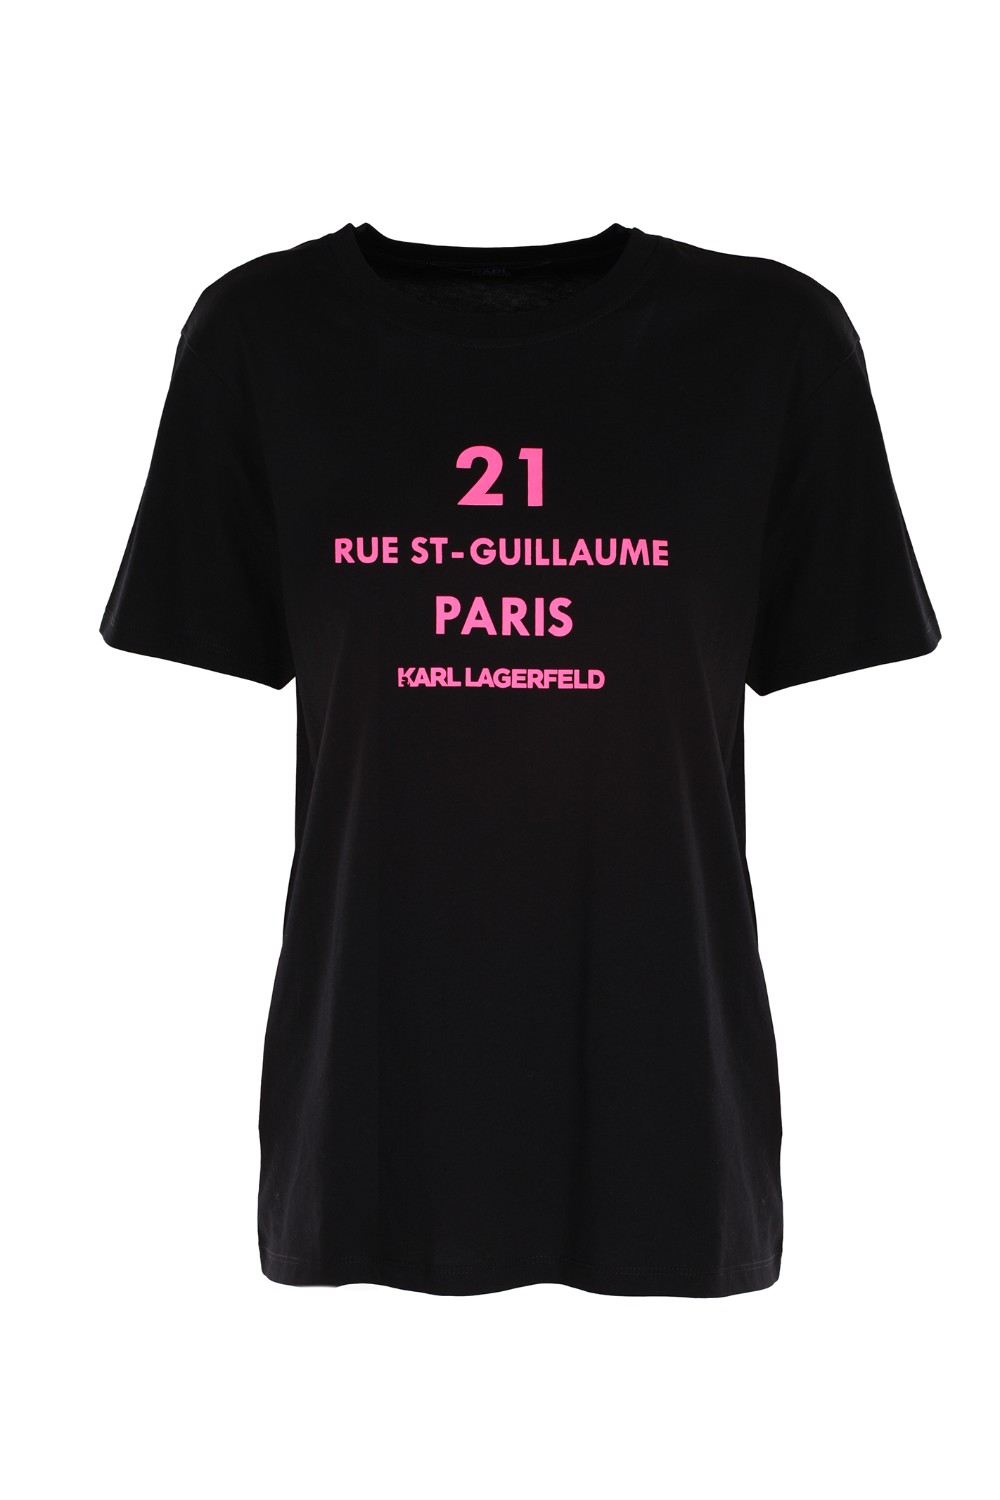 shop KARL LAGERFELD Saldi T-shirt: Karl Lagerfeld t-shirt Rue St-Guillaume.
Girocollo.
Maniche corte.
Stampa con logo Karl sul petto.
Vestibilità regular.
Composizione: 100% cotone.. 20KW201W1755-N number 9041186